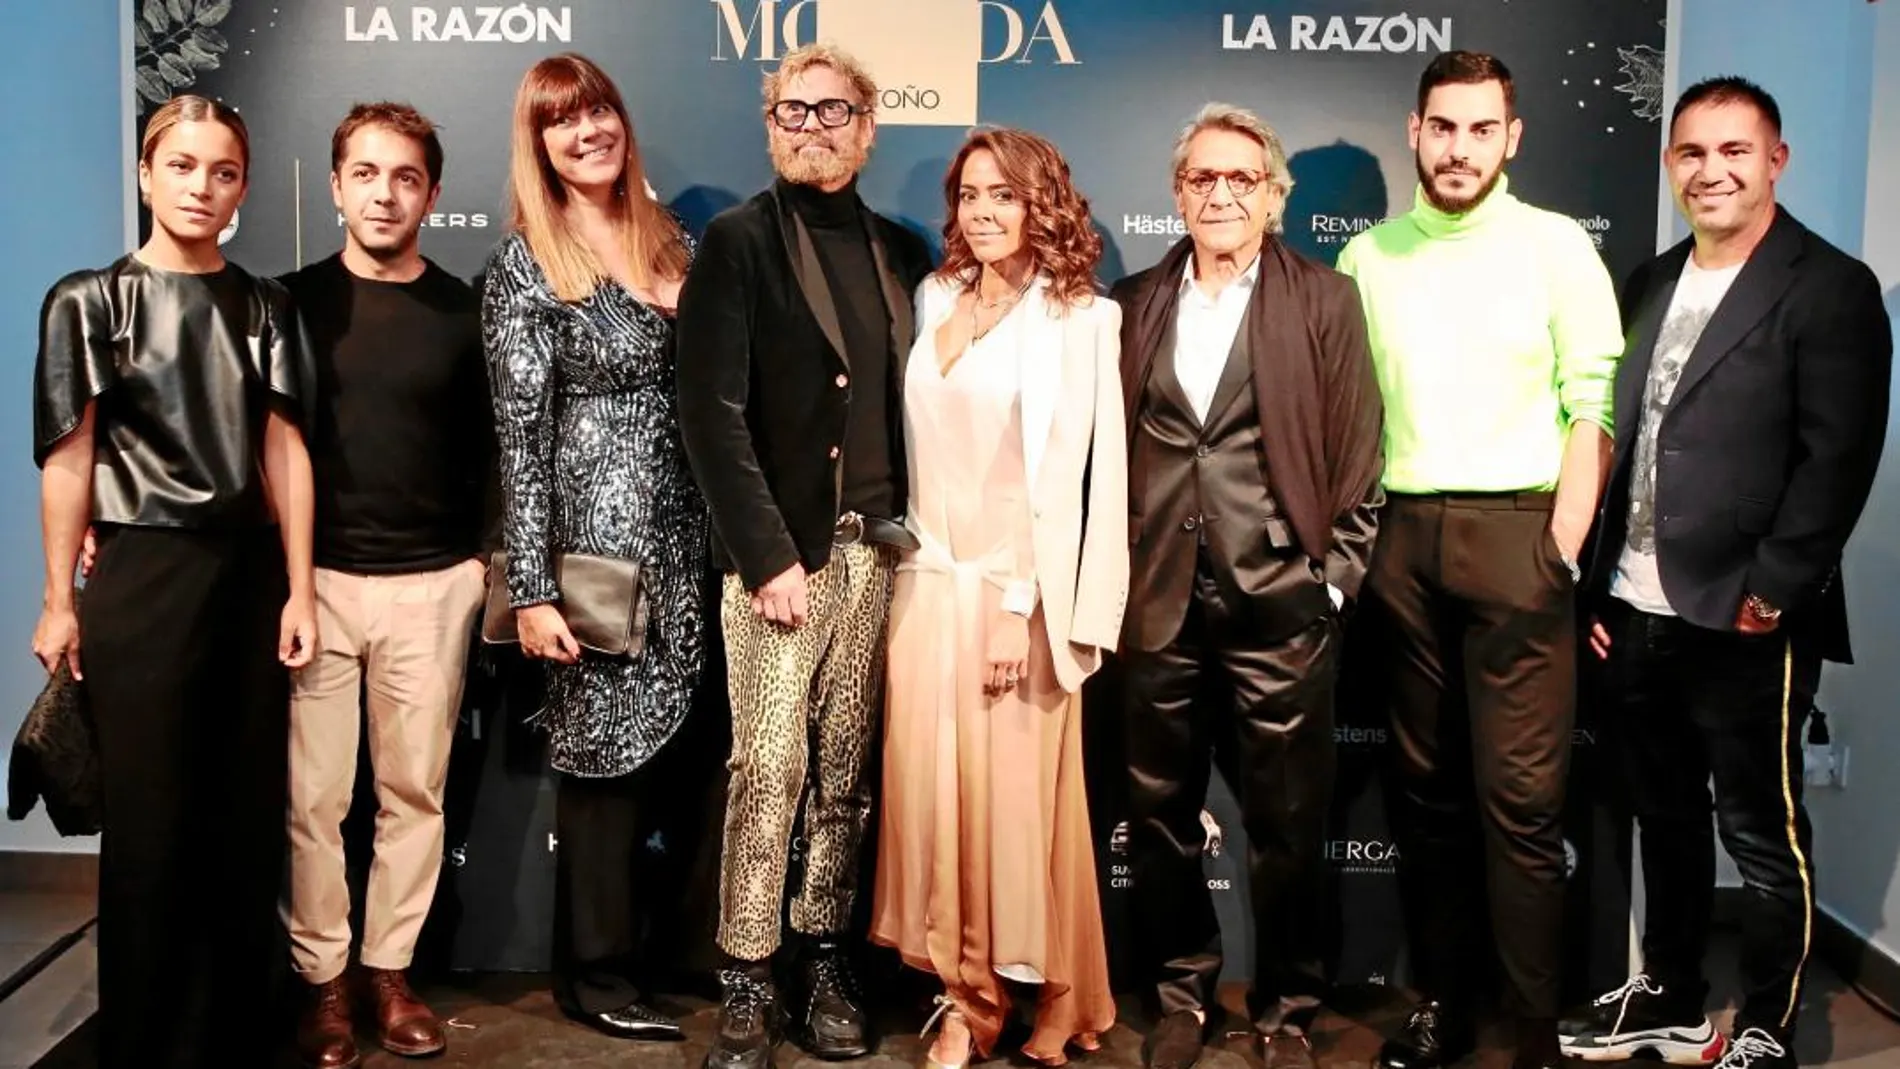 La Pasarela de Moda LA RAZÓN, tras 11 ediciones, se consolida y un año más congregó a decenas de «influencers», creadores, comunicadores y numerosas personalidades del mundo de la moda / Foto: Gonzalo Pérez